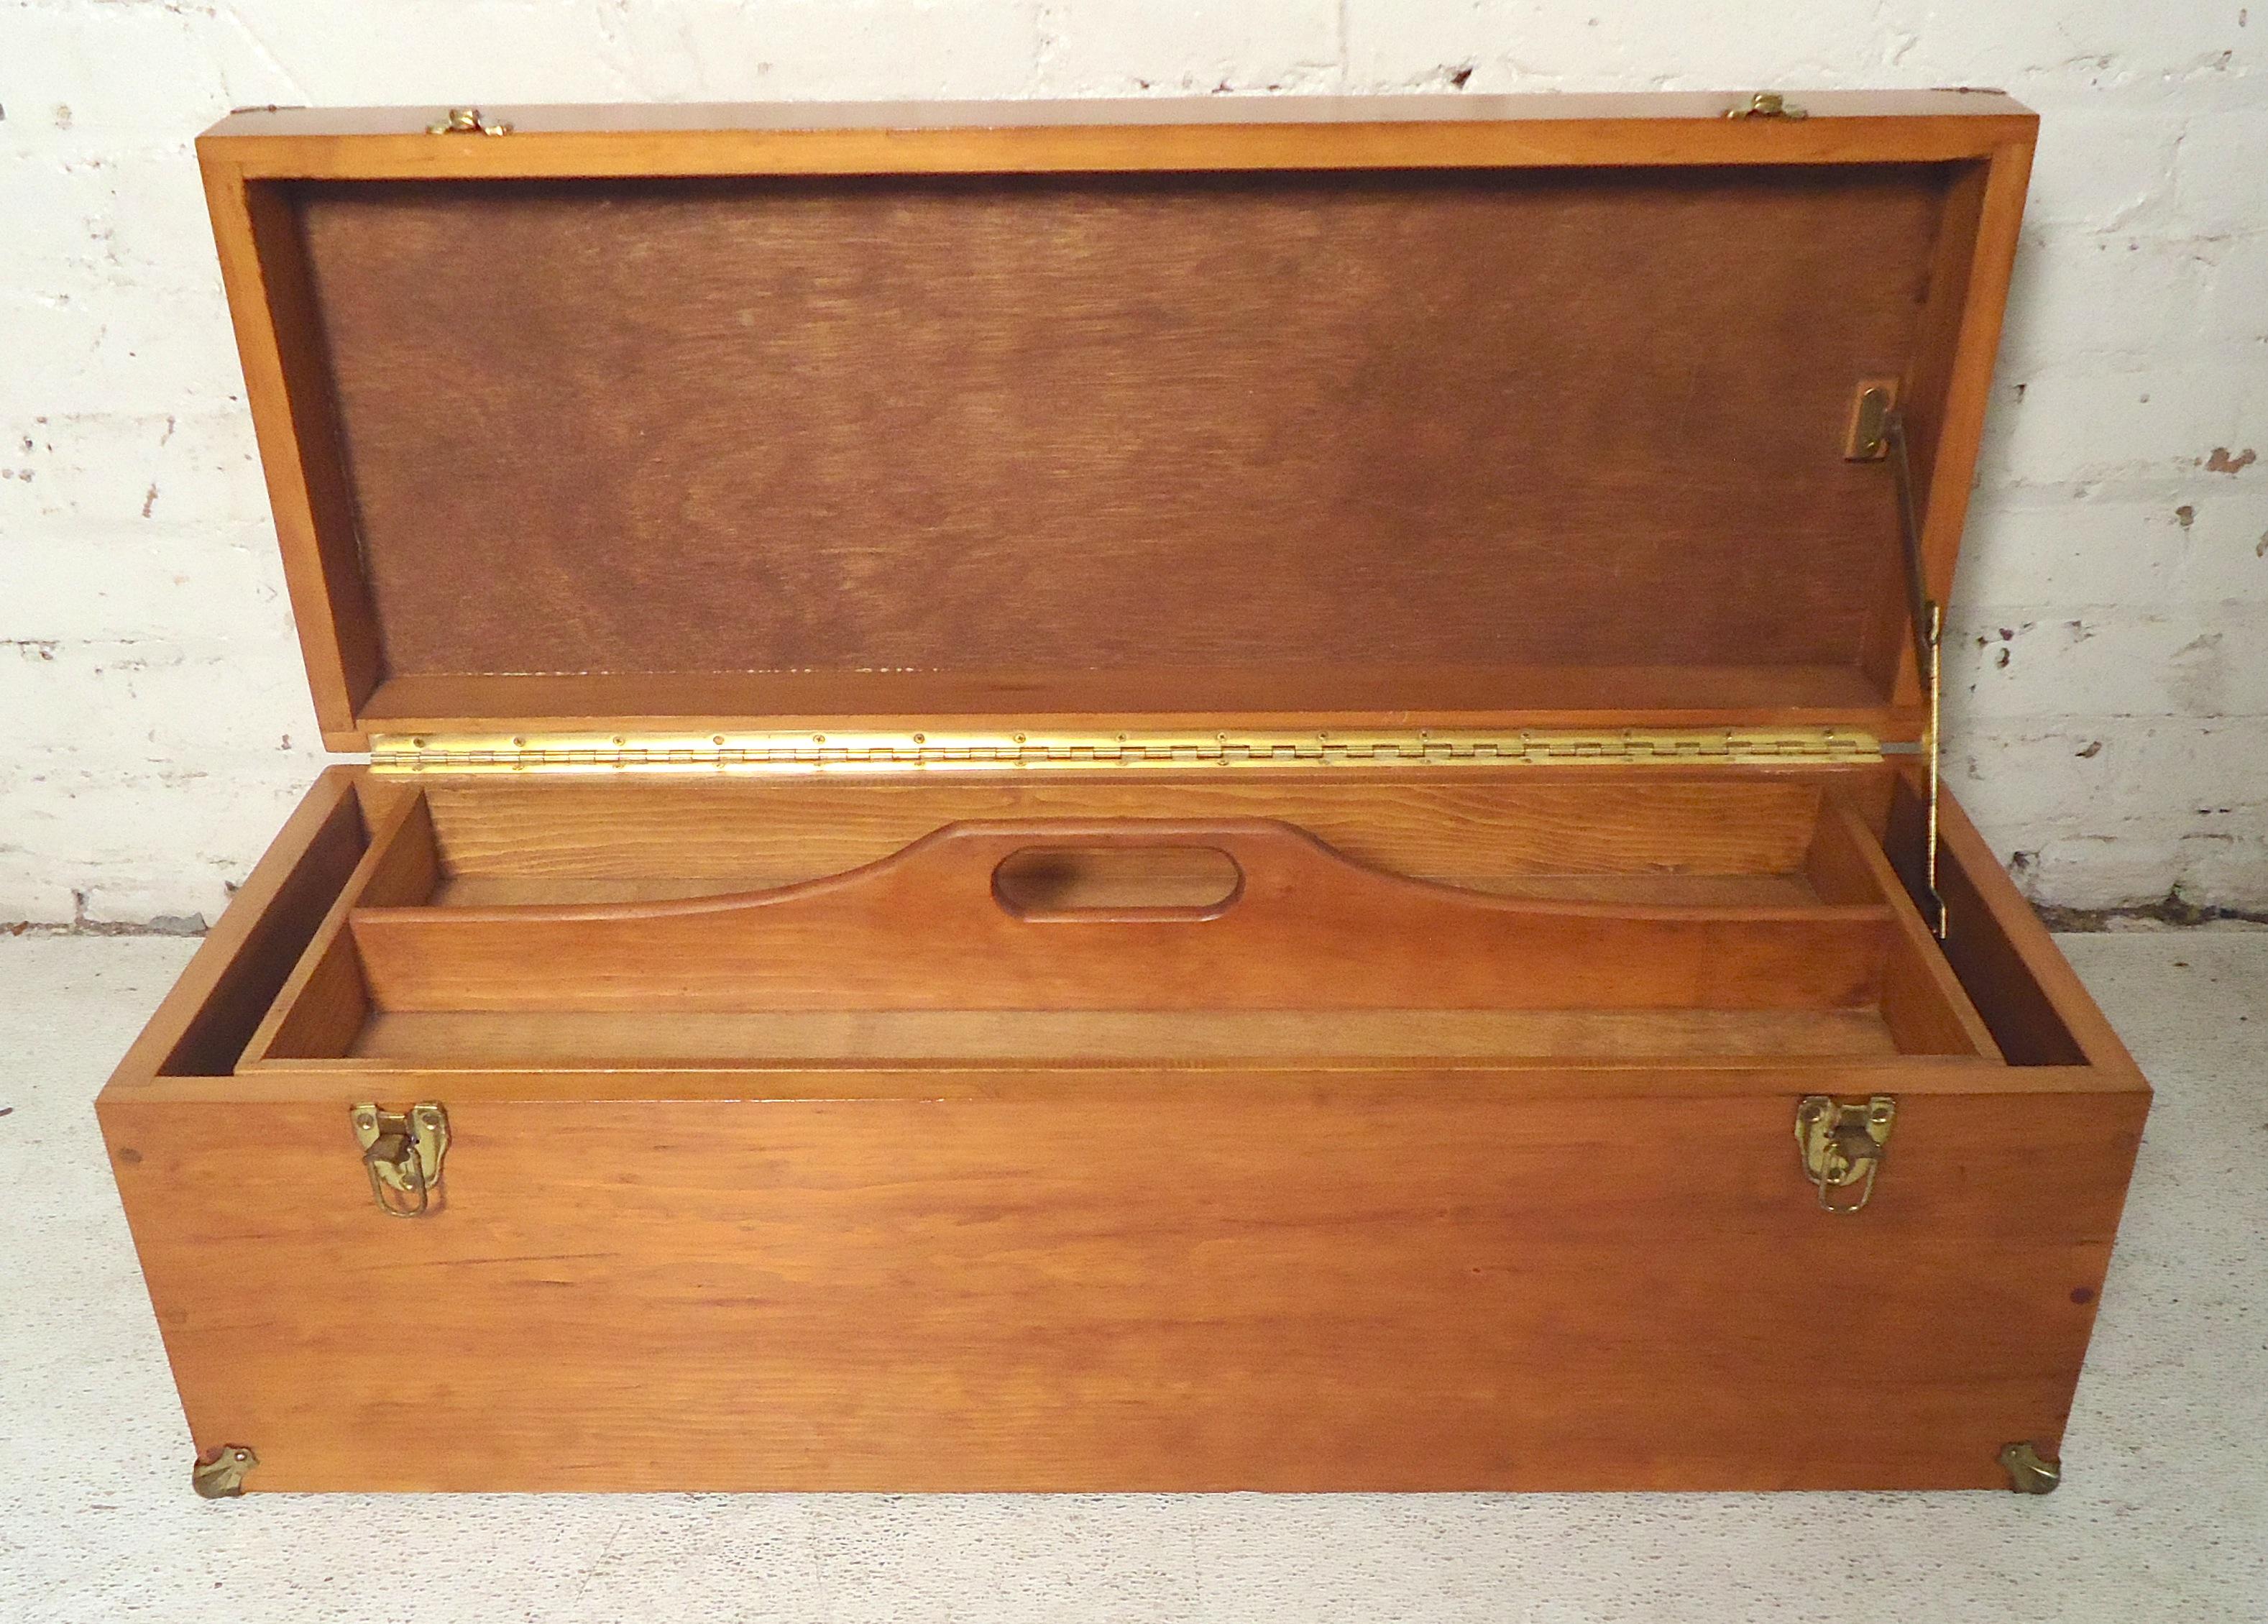 Wood Vintage Teak Tool Box